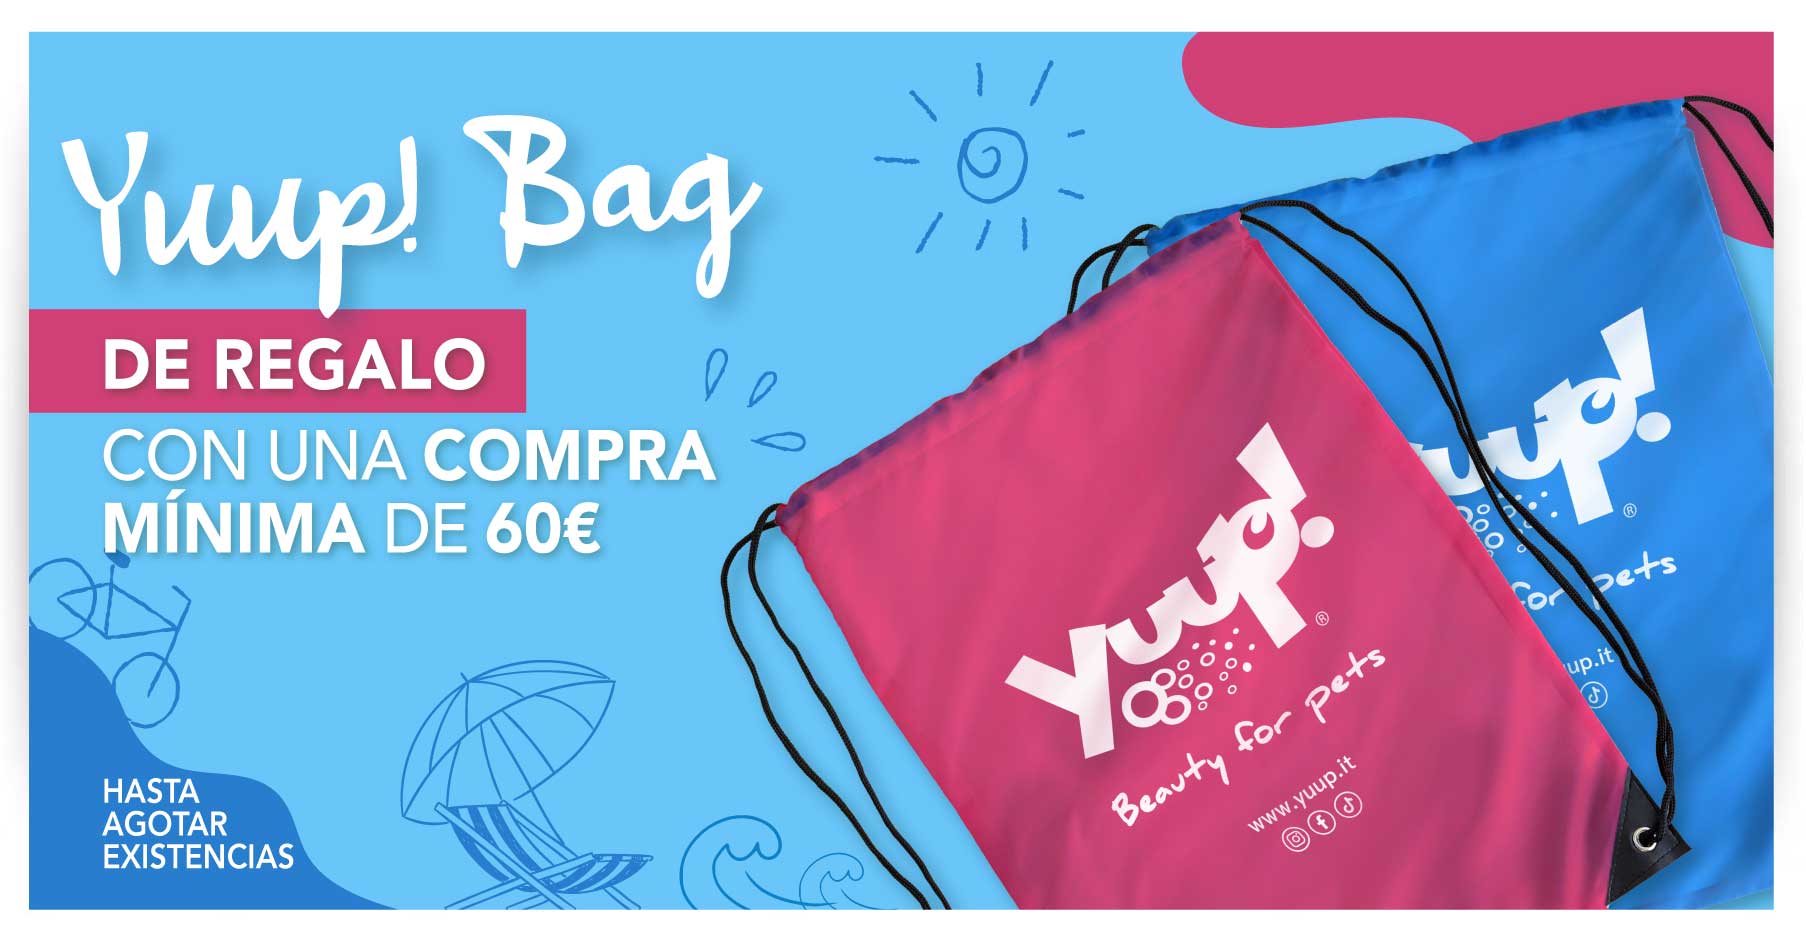 Yuup! Bag in omaggio con una spesa di minimo 60€